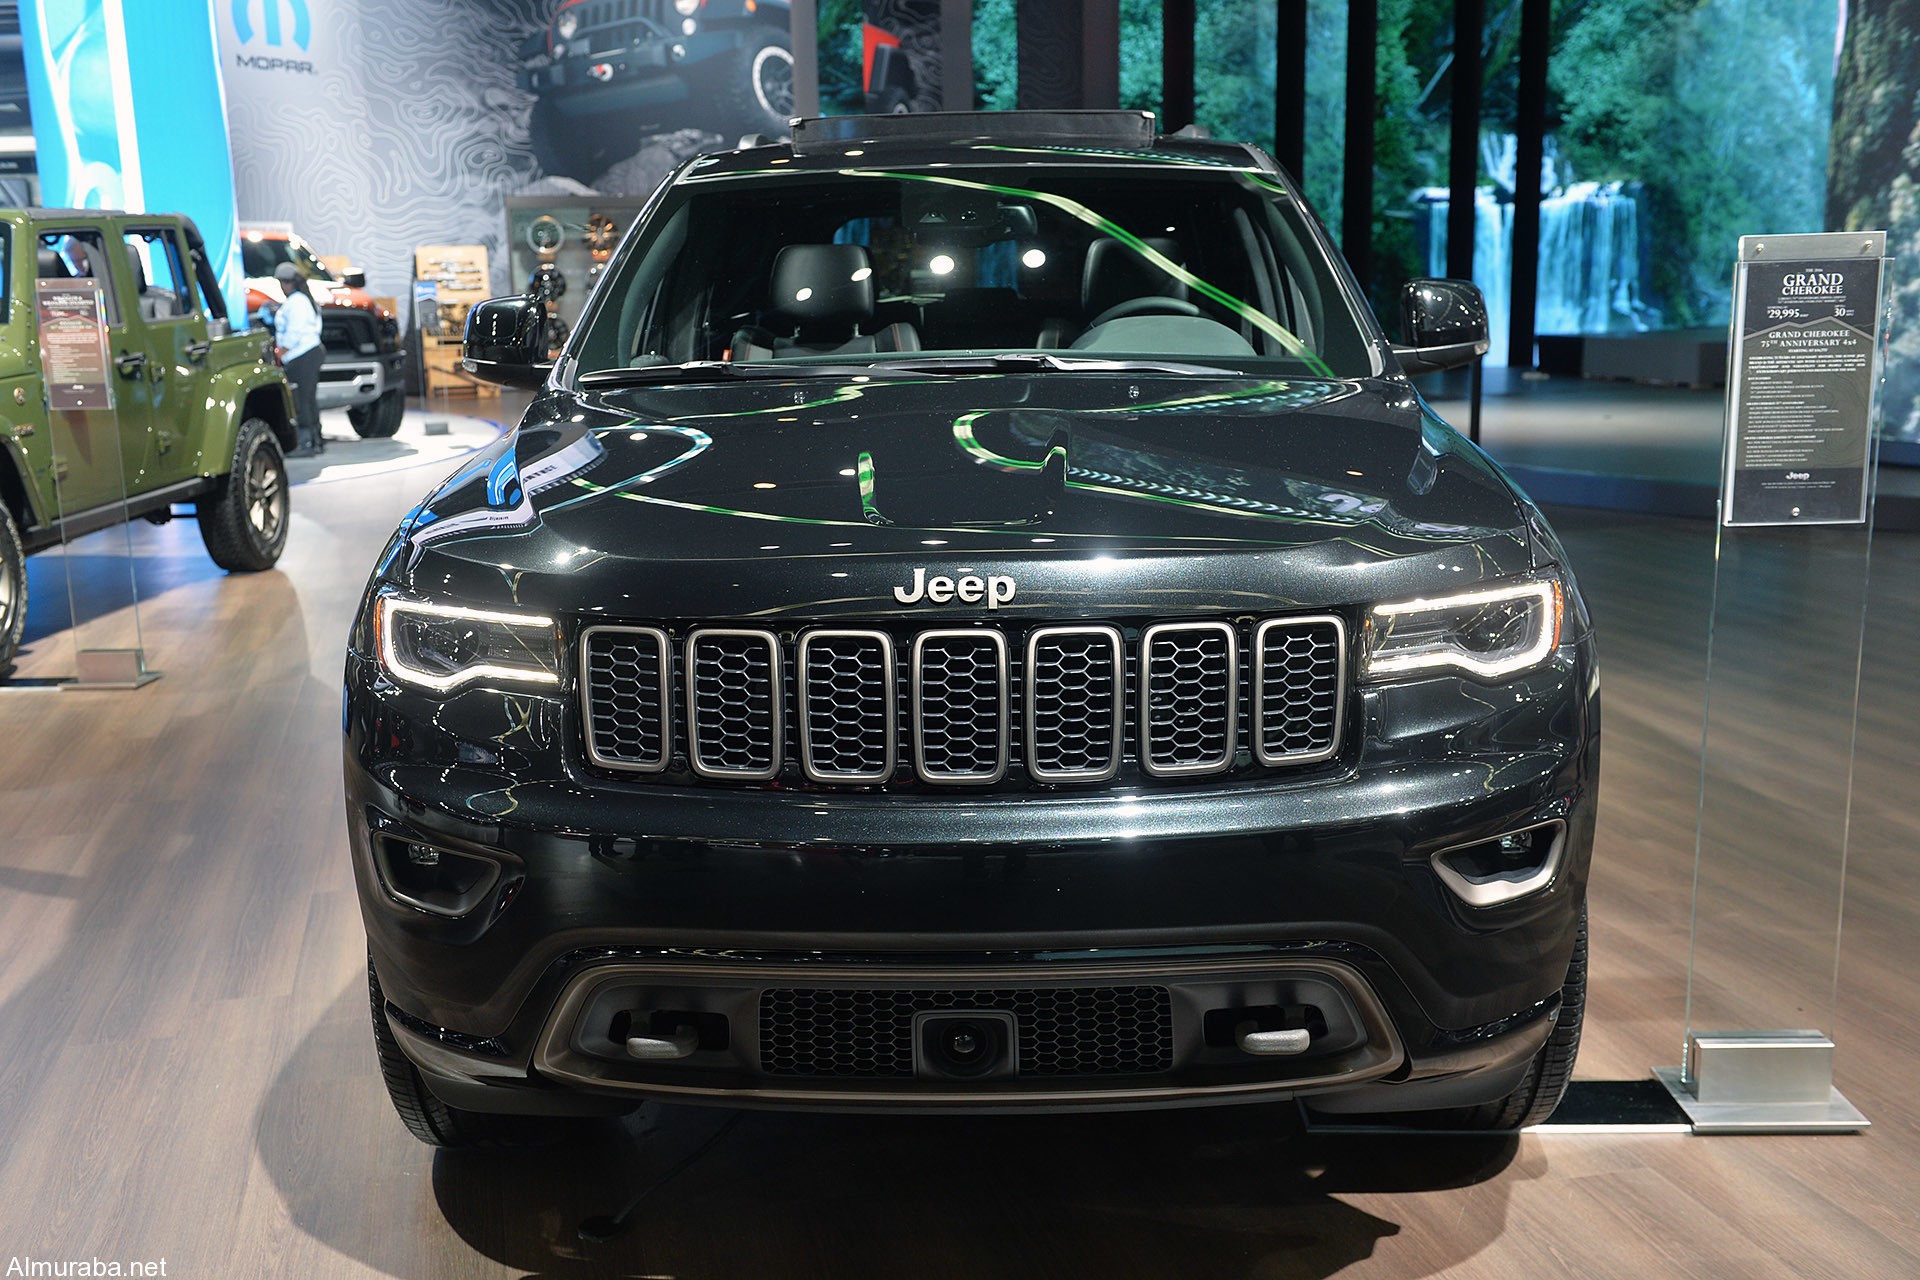 "جيب" تحتفل بالذكرى 75 لتأسيسها بالكشف عن مجموعة إصدارات لعام 2016 الجديدة Jeep 1